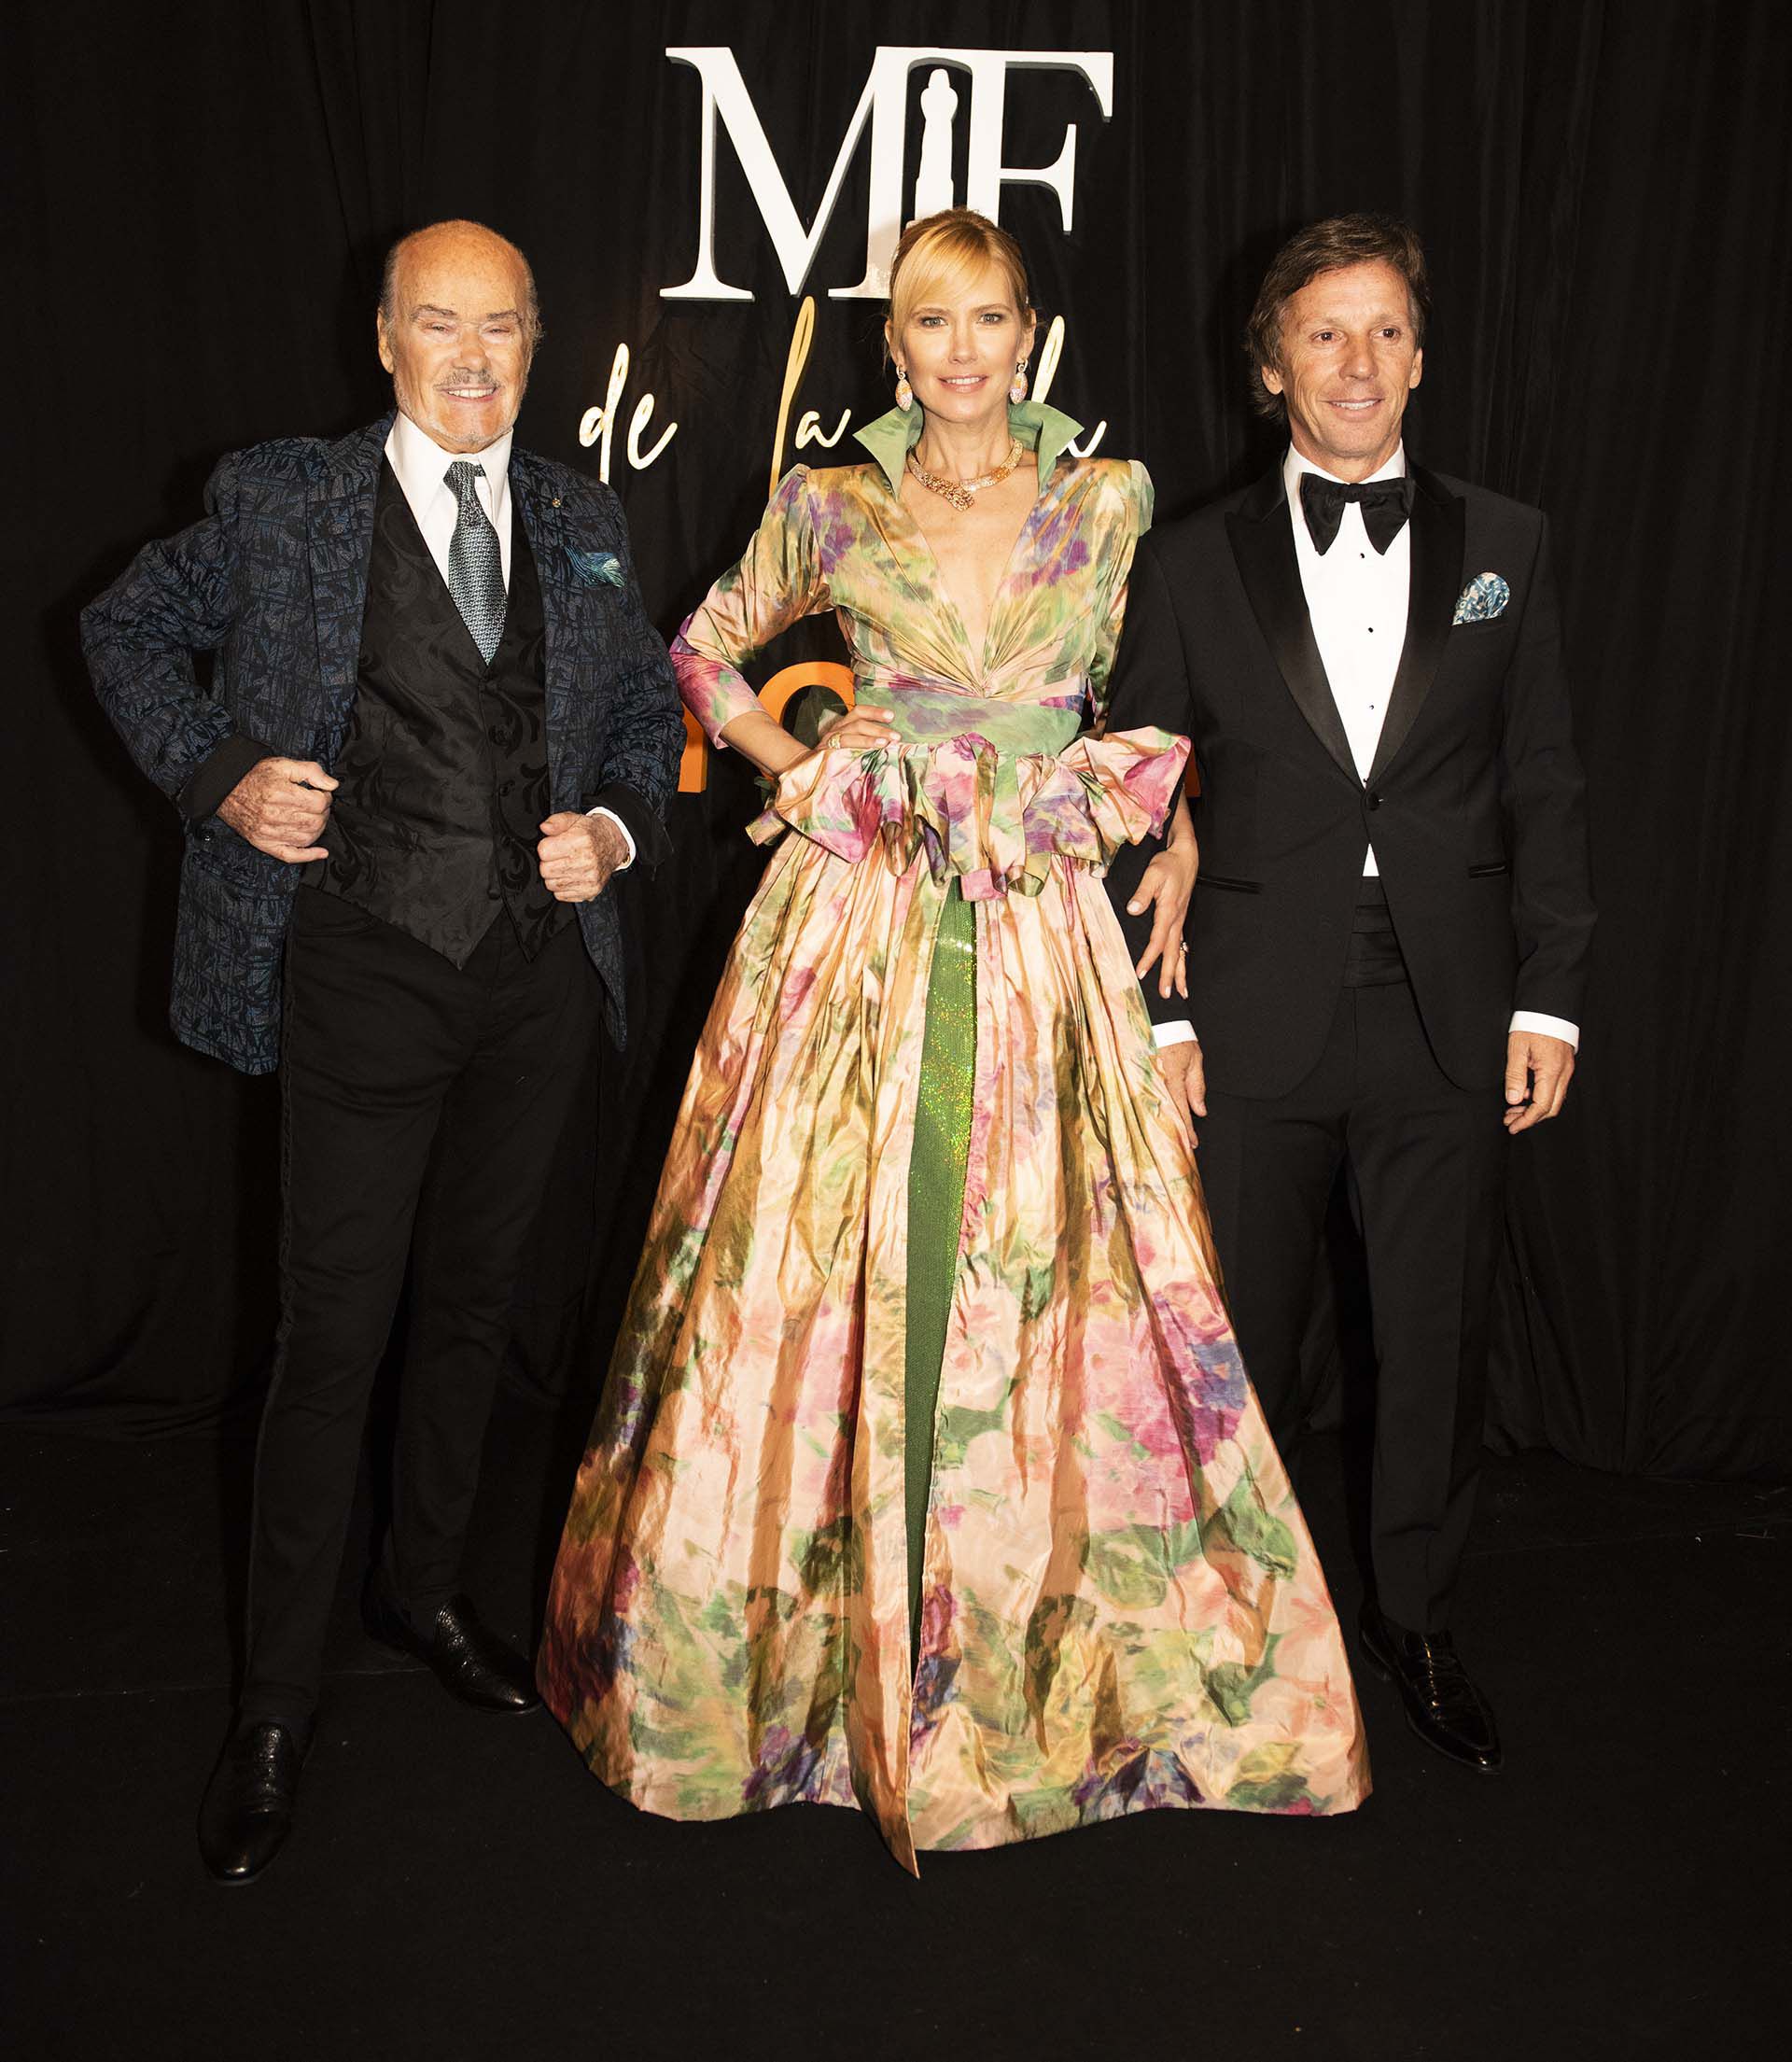 Valeria Mazza con un vestido multicolor, corte en la cintura y cuello del diseñador Gino Bogani, junto con el diseñador de su vestido Gino Bogani y su marido Alejandro Gravier 